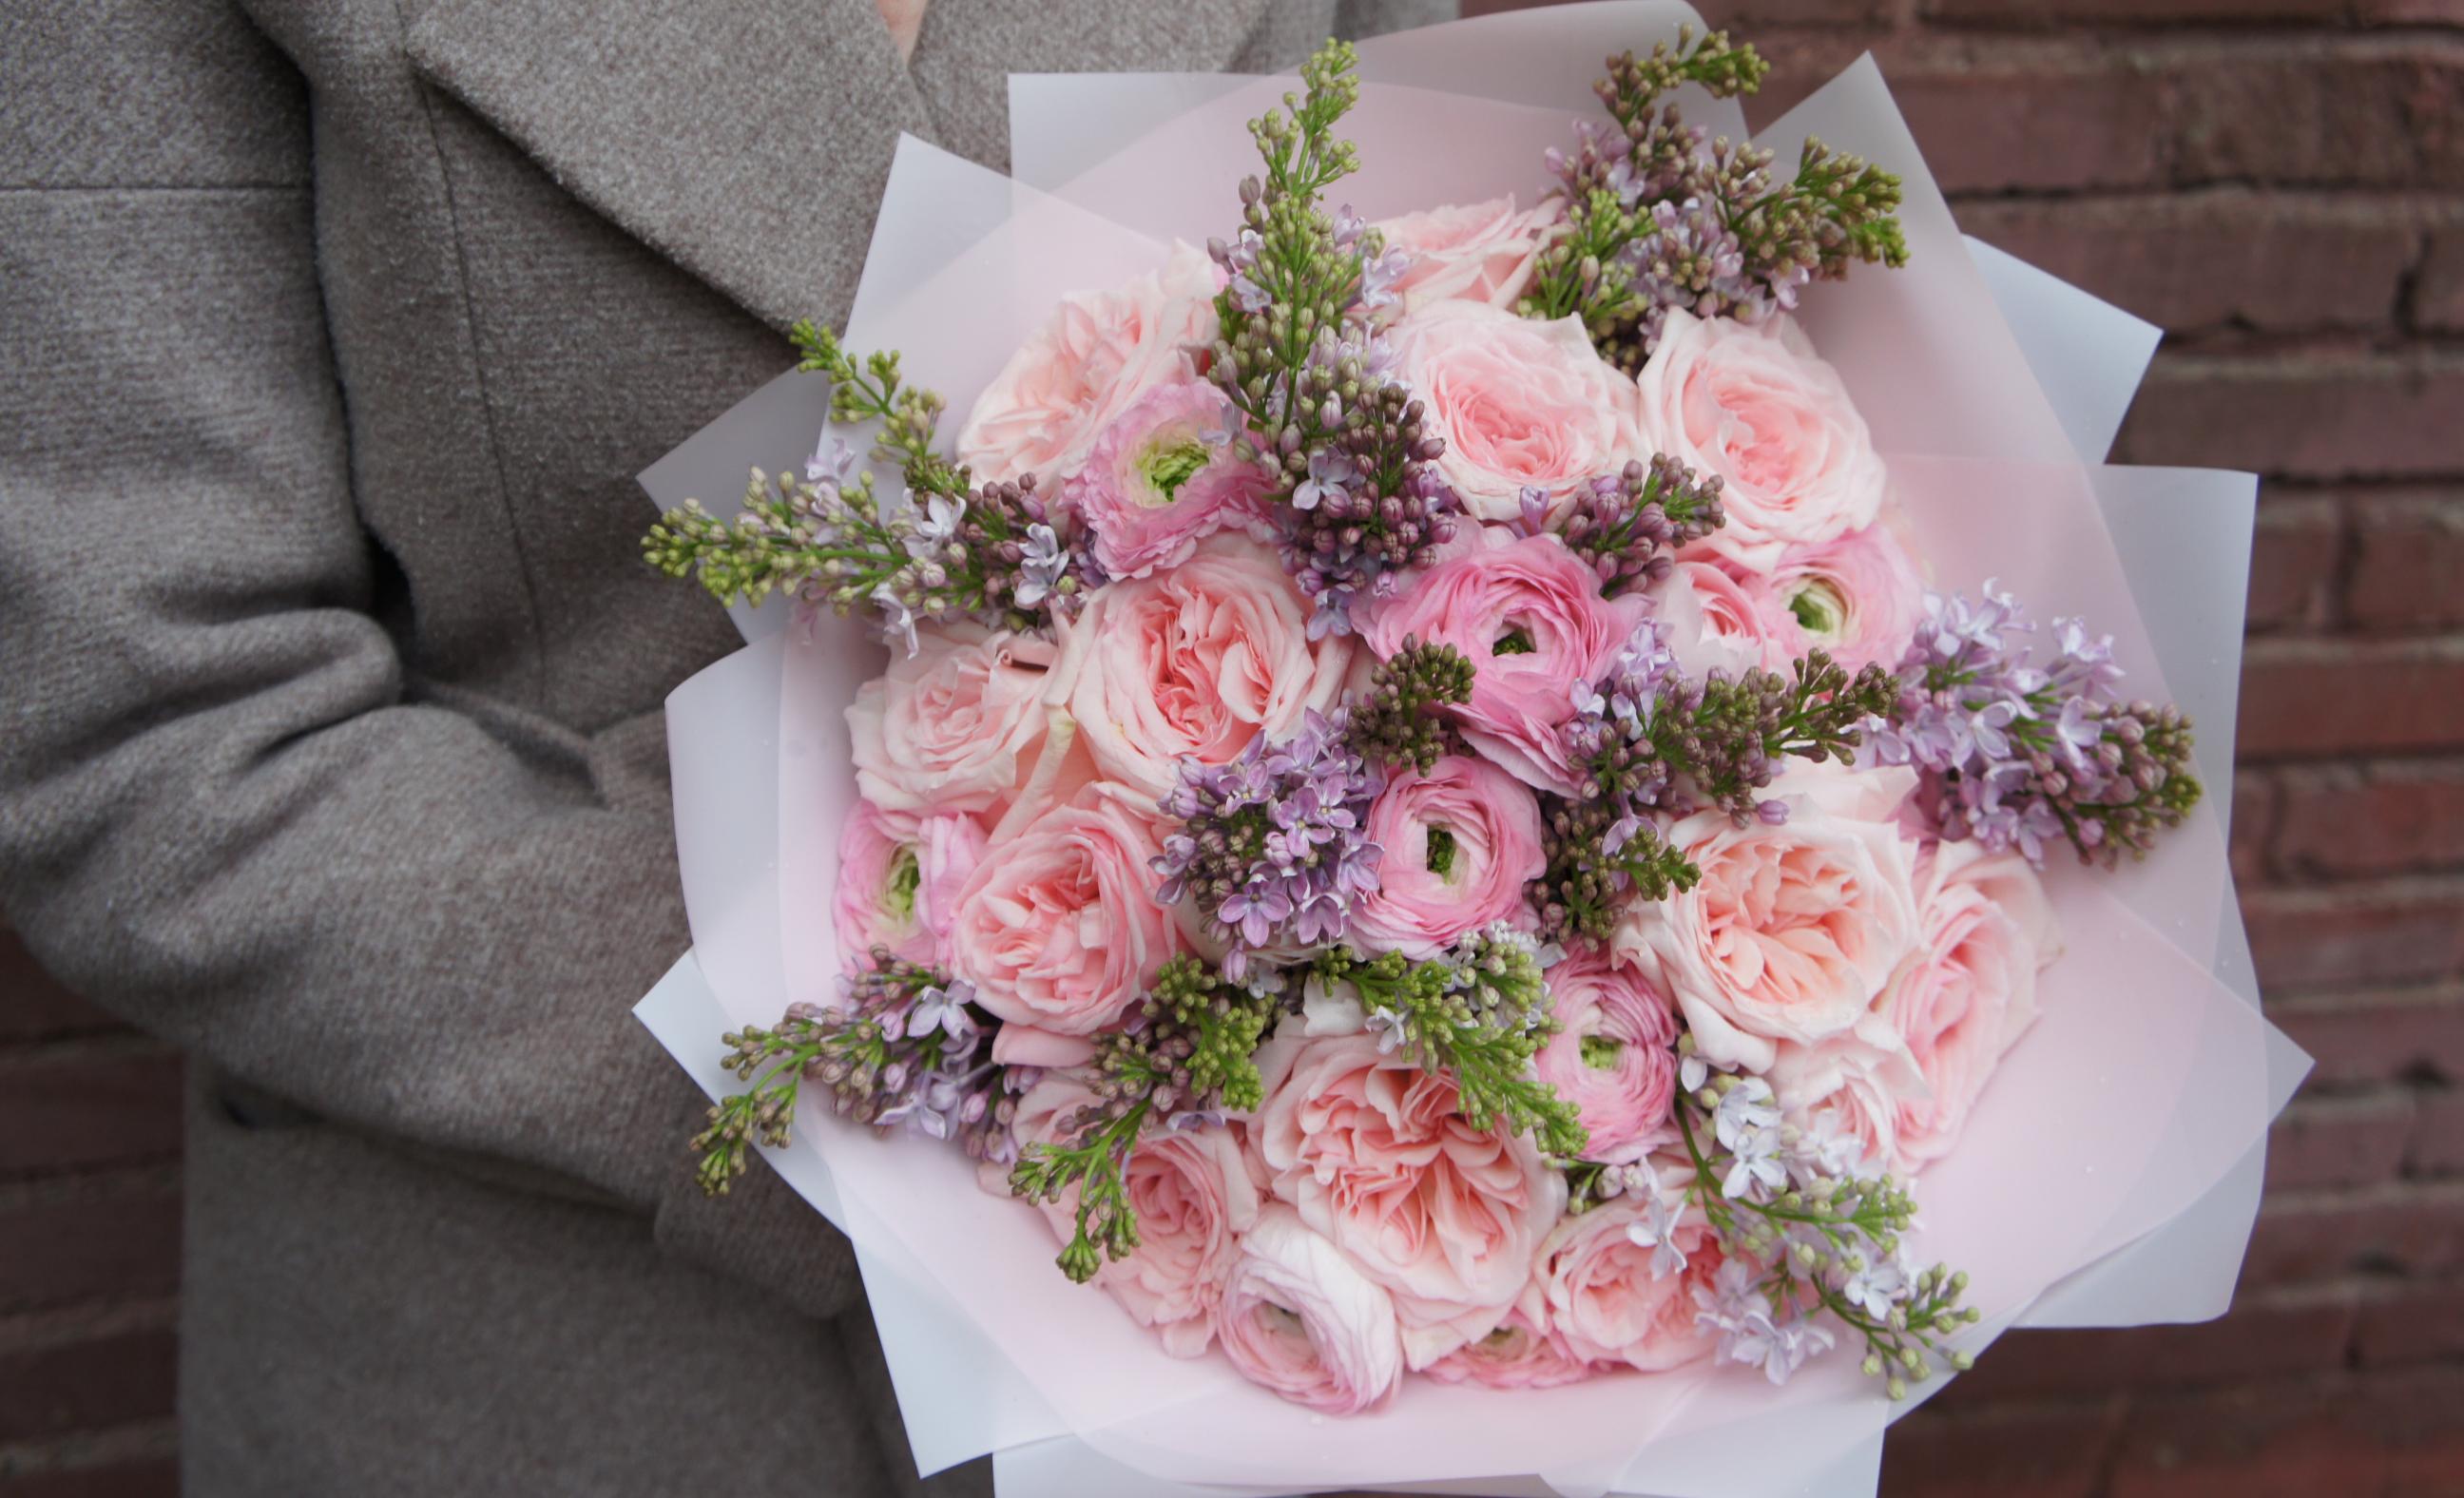 Купить букет / цветы Луиза в Москве с доставкой по отличной цене